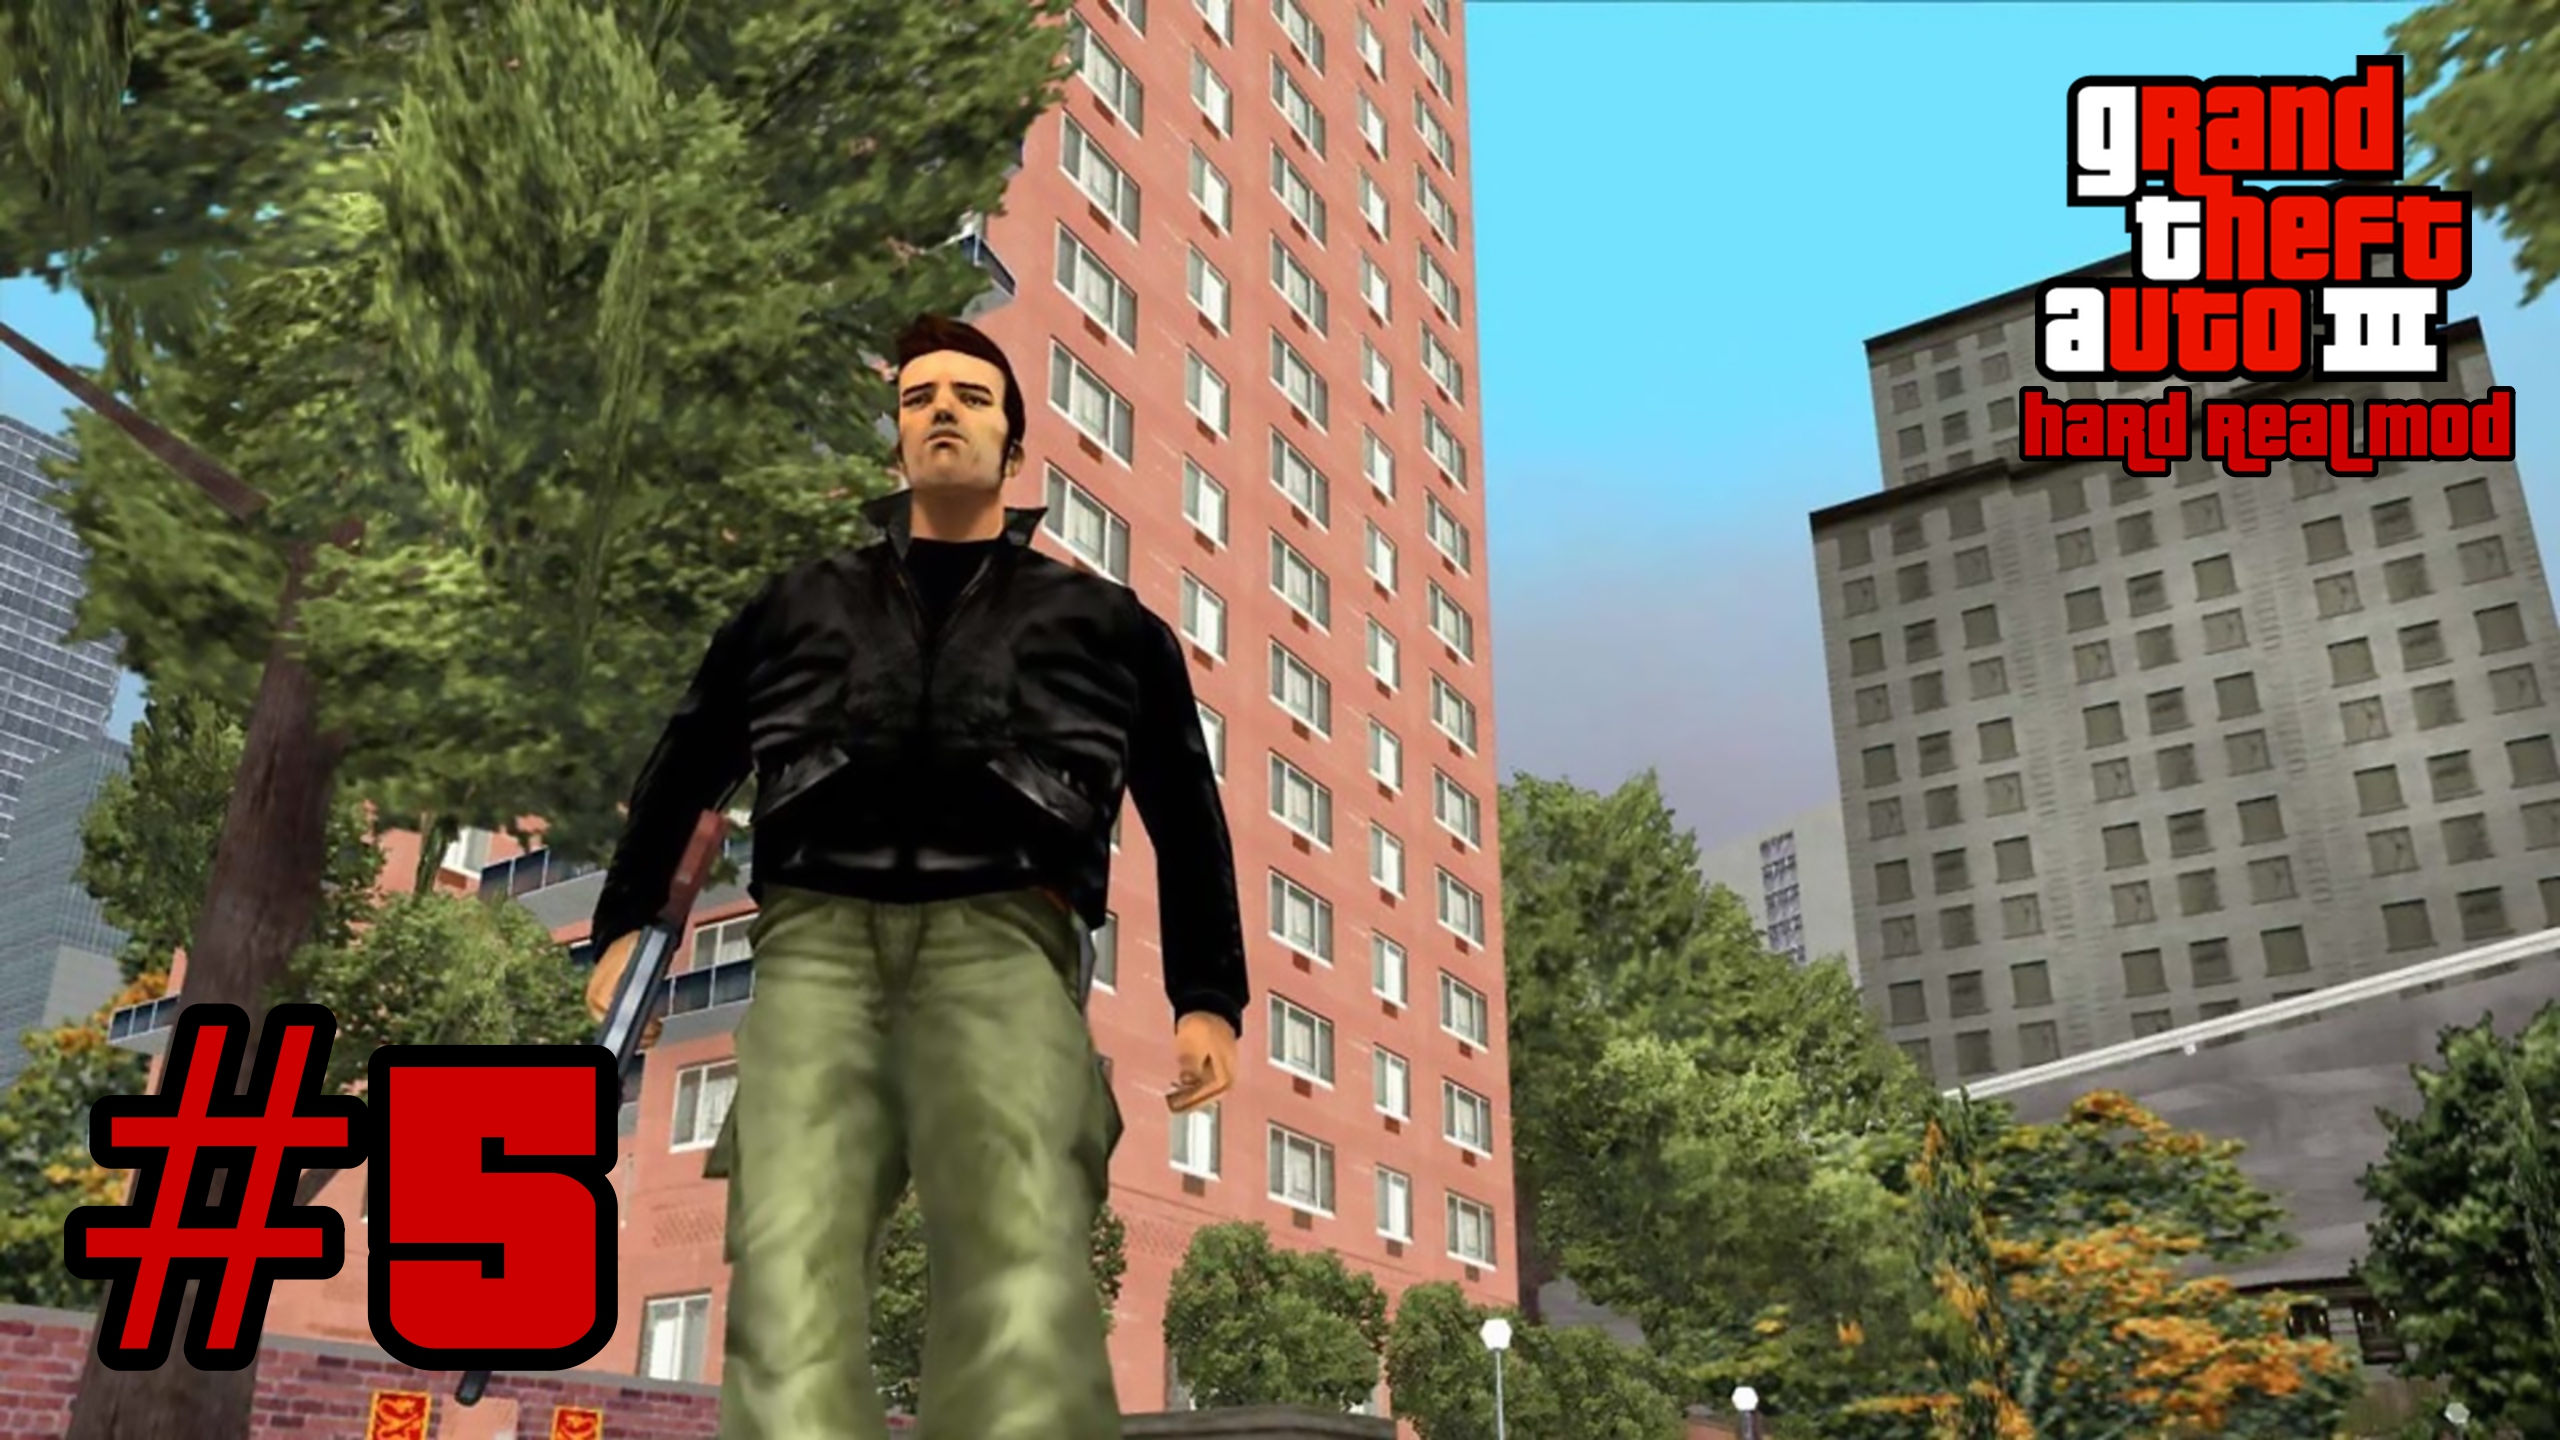 Grand Theft Auto 3: Hard Real Mod - Полное Уничтожение #5 (Финал игры с русской озвучкой на 100%)